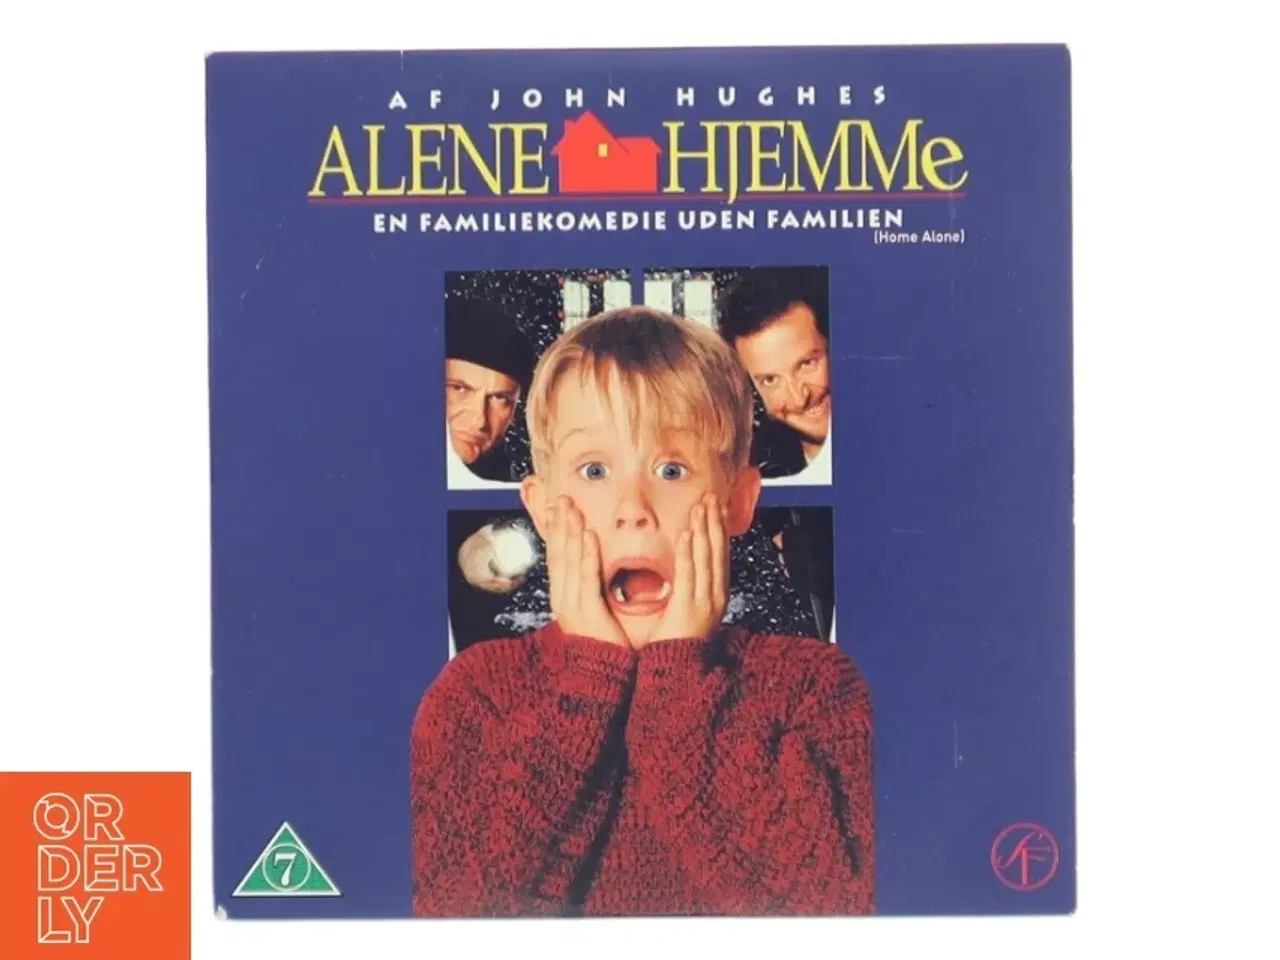 Billede 1 - Home Alone DVD fra Twentieth Century Fox